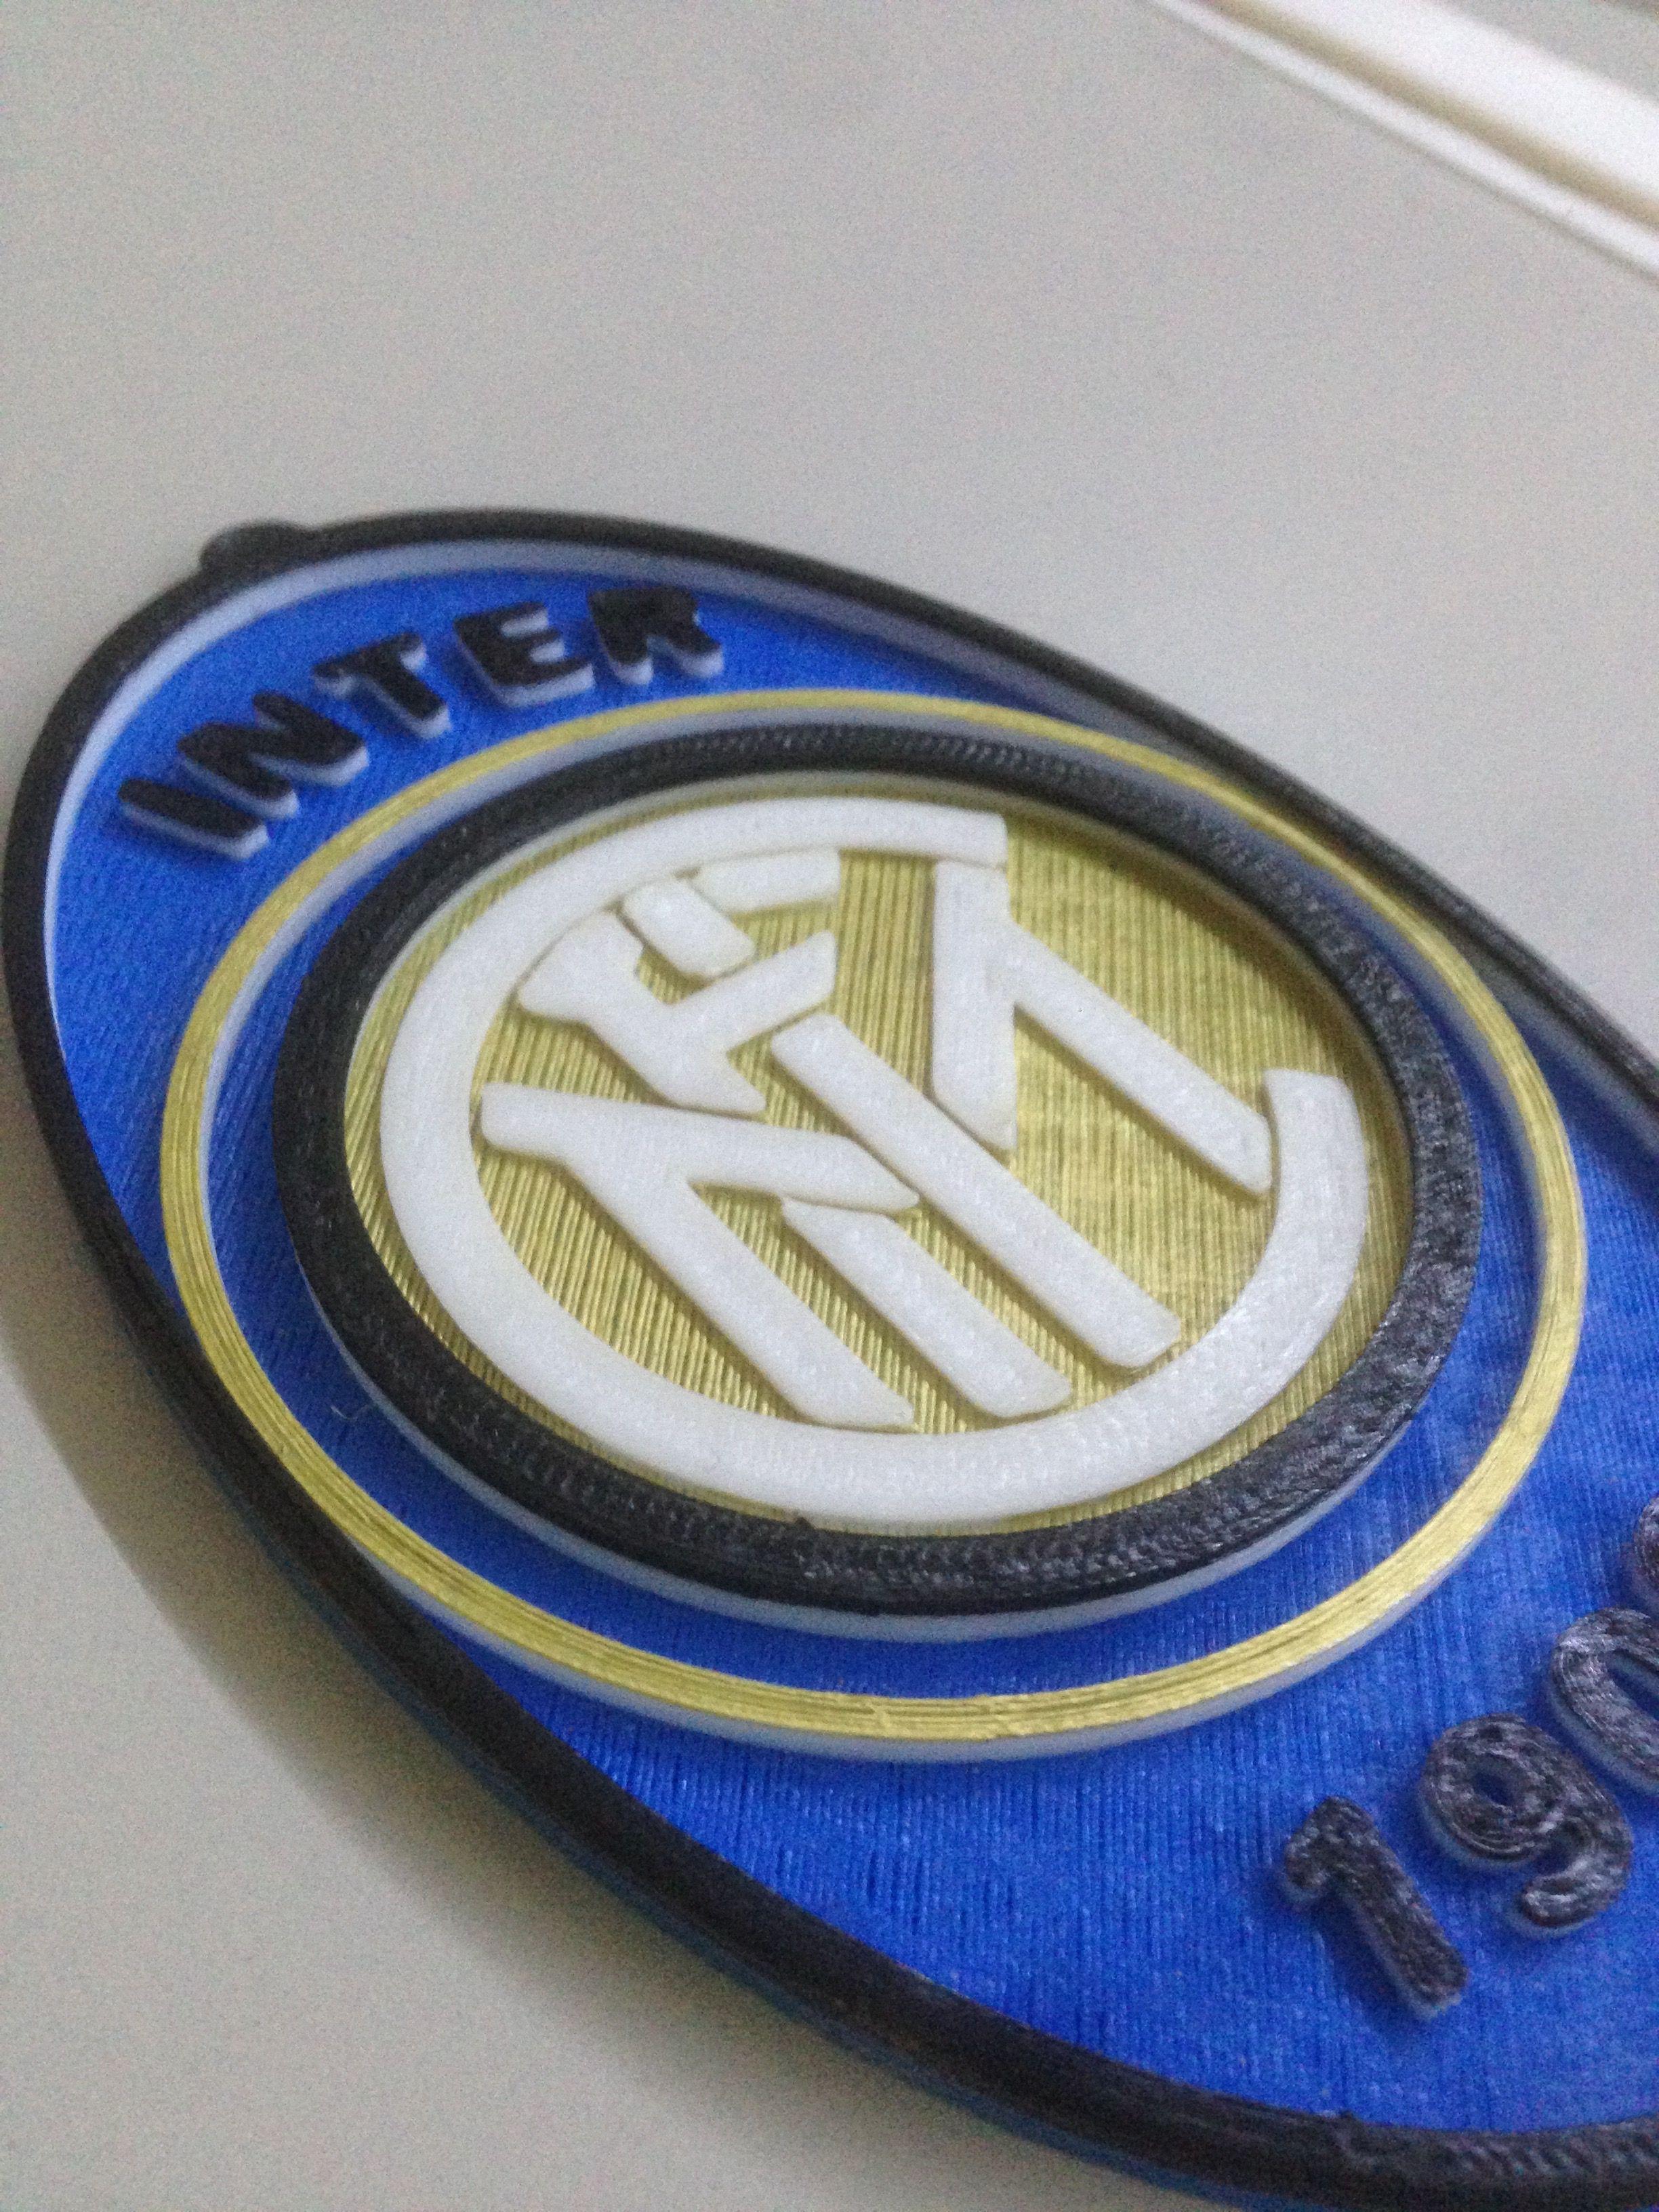 Inter Logo - Inter Logo